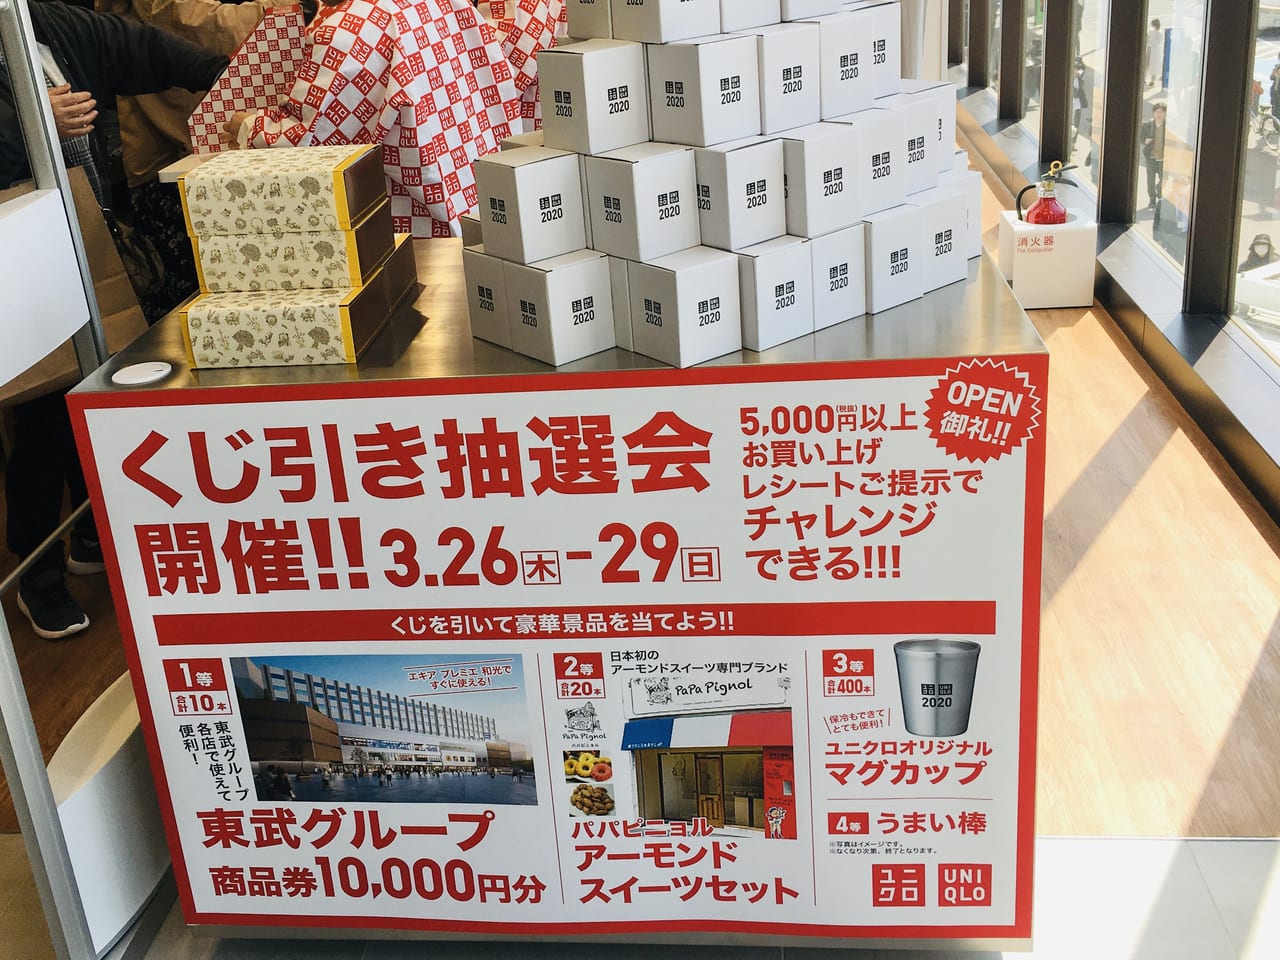 和光市 ユニクロと成城石井のオープニングセールがすごい チラシを事前にチェックして手短に買い物を済ませましょう 号外net 朝霞市 和光市